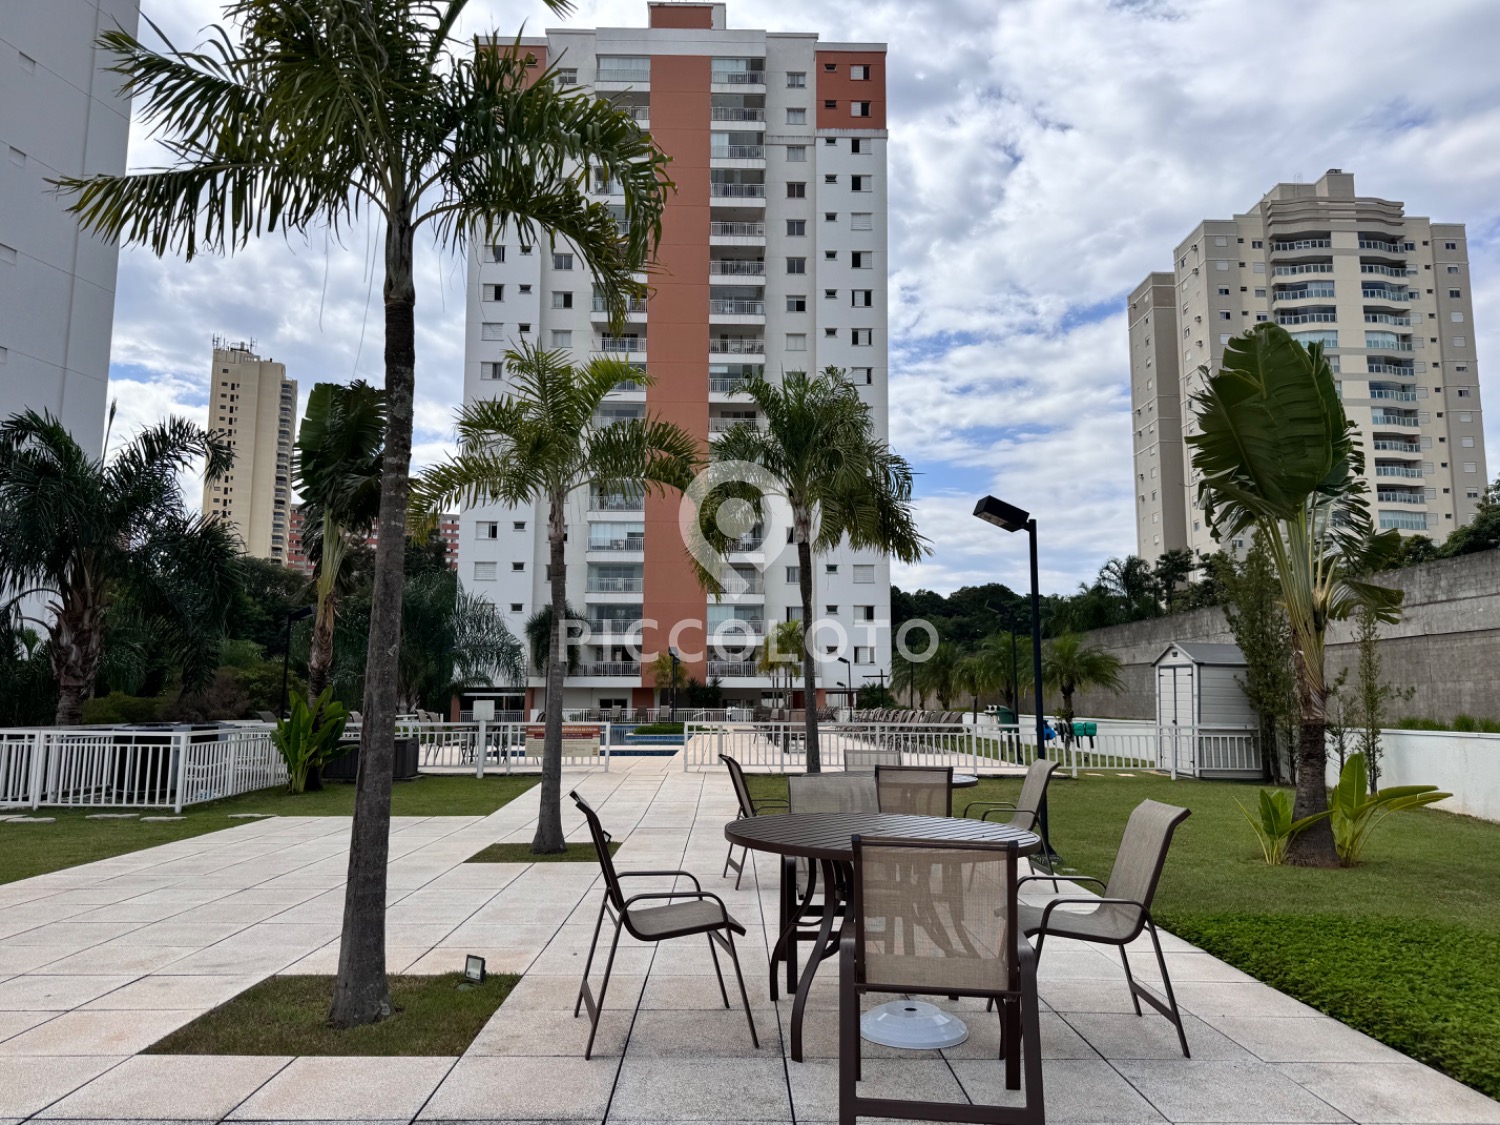 Piccoloto -Apartamento para alugar no Parque Prado em Campinas